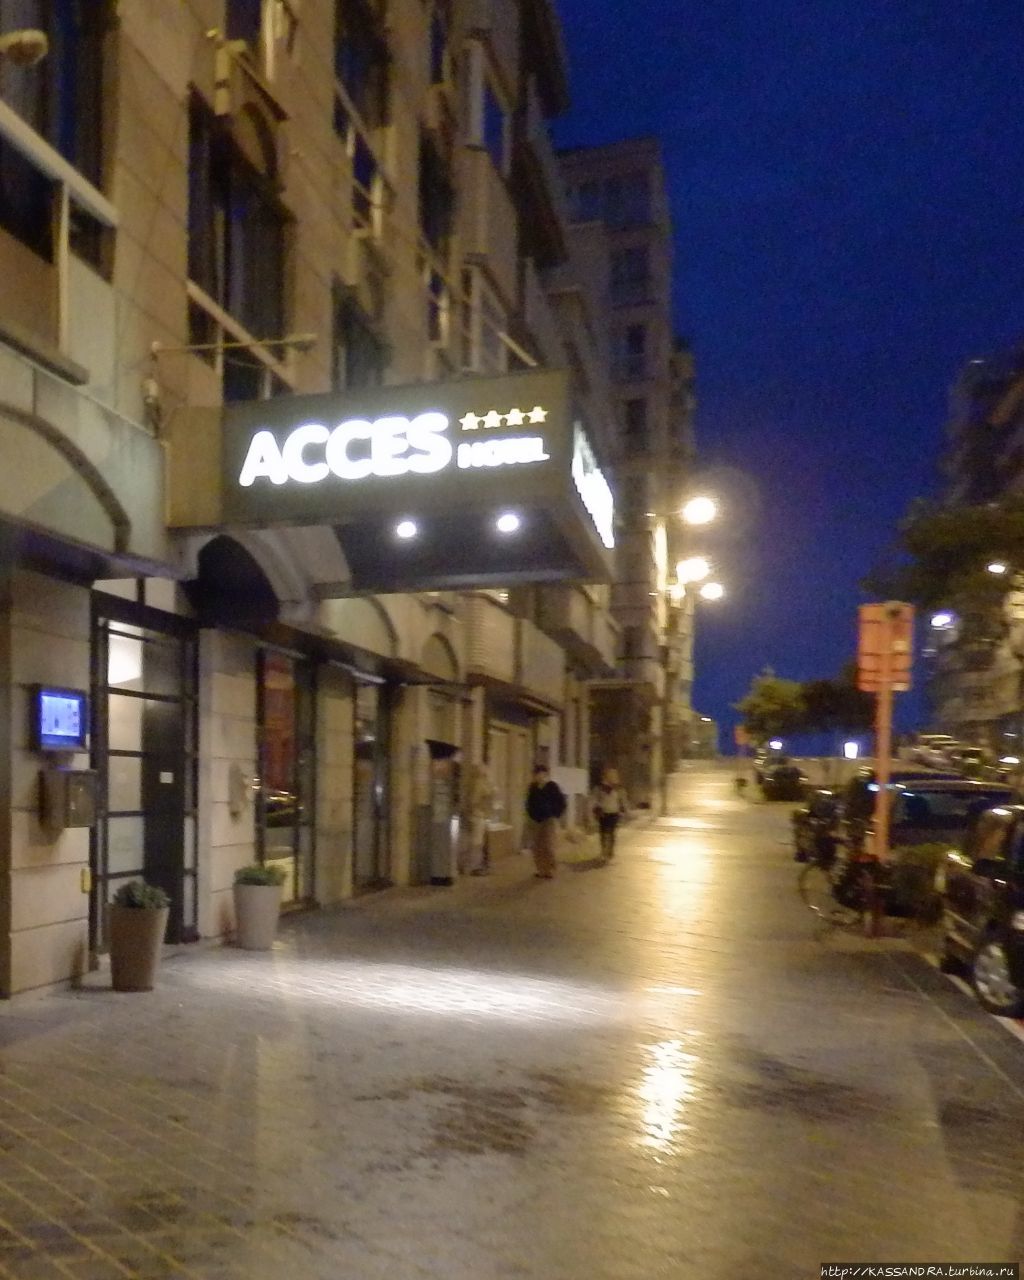 Acces отель / Acces Hotel